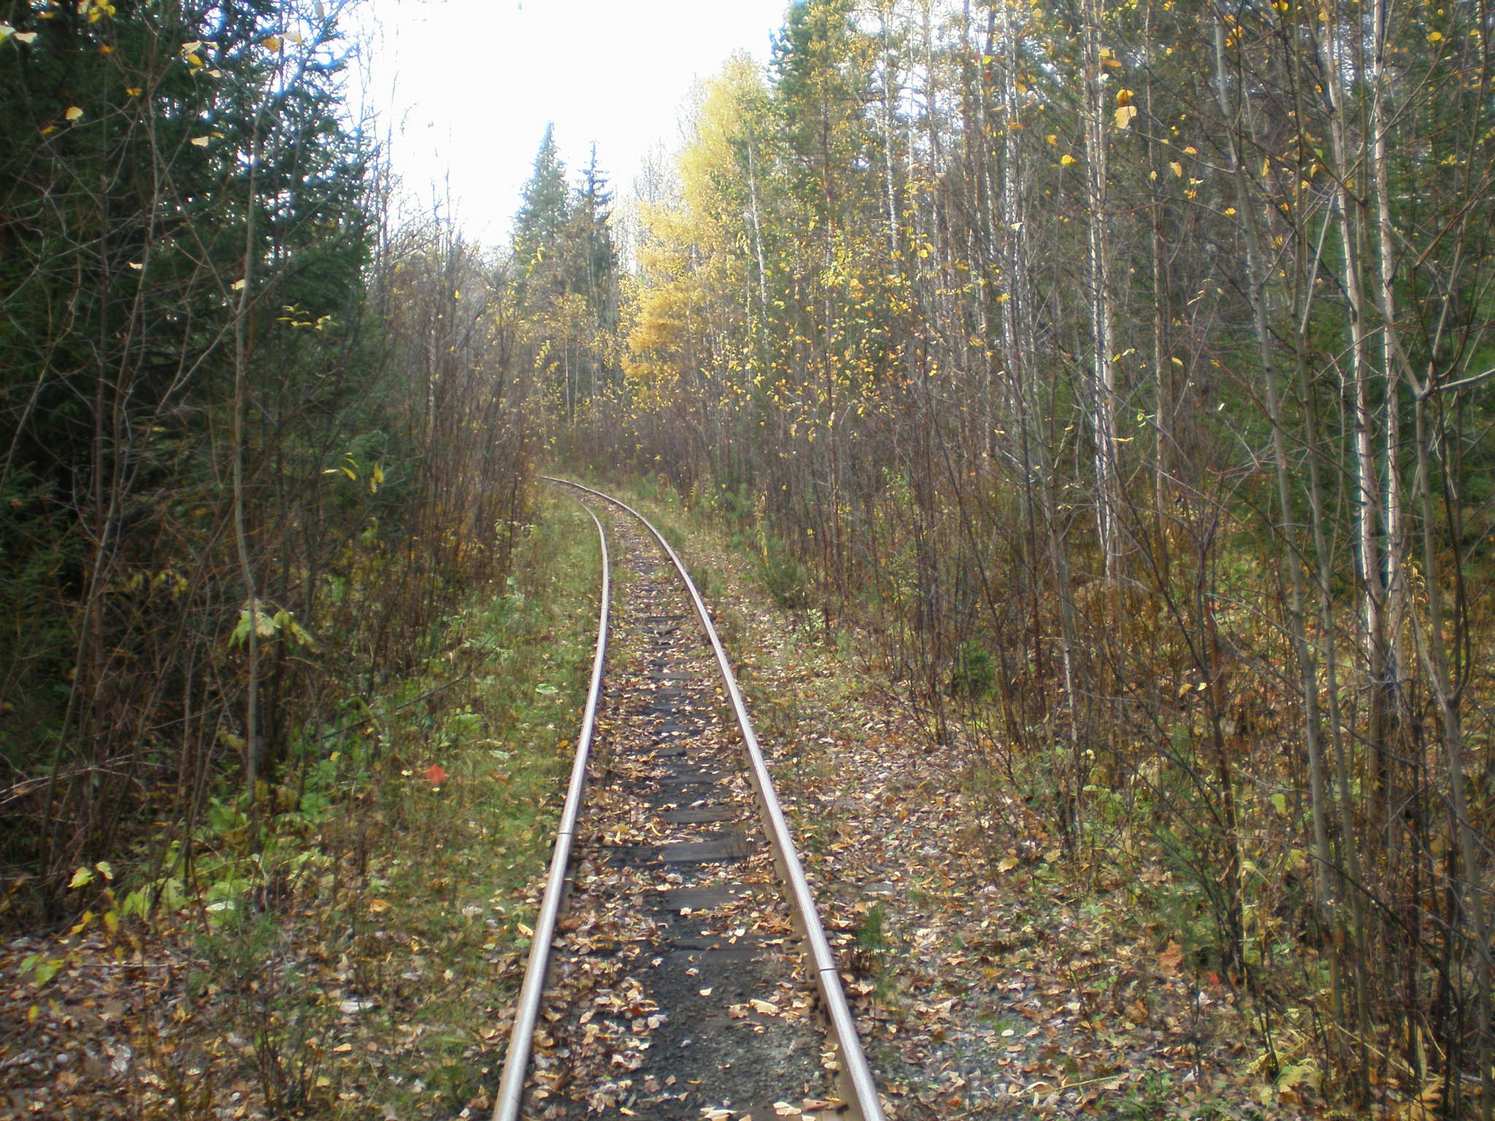 Висимо-Уткинская узкоколейная железная дорога  — фотографии, сделанные в 2007 году (часть 6)